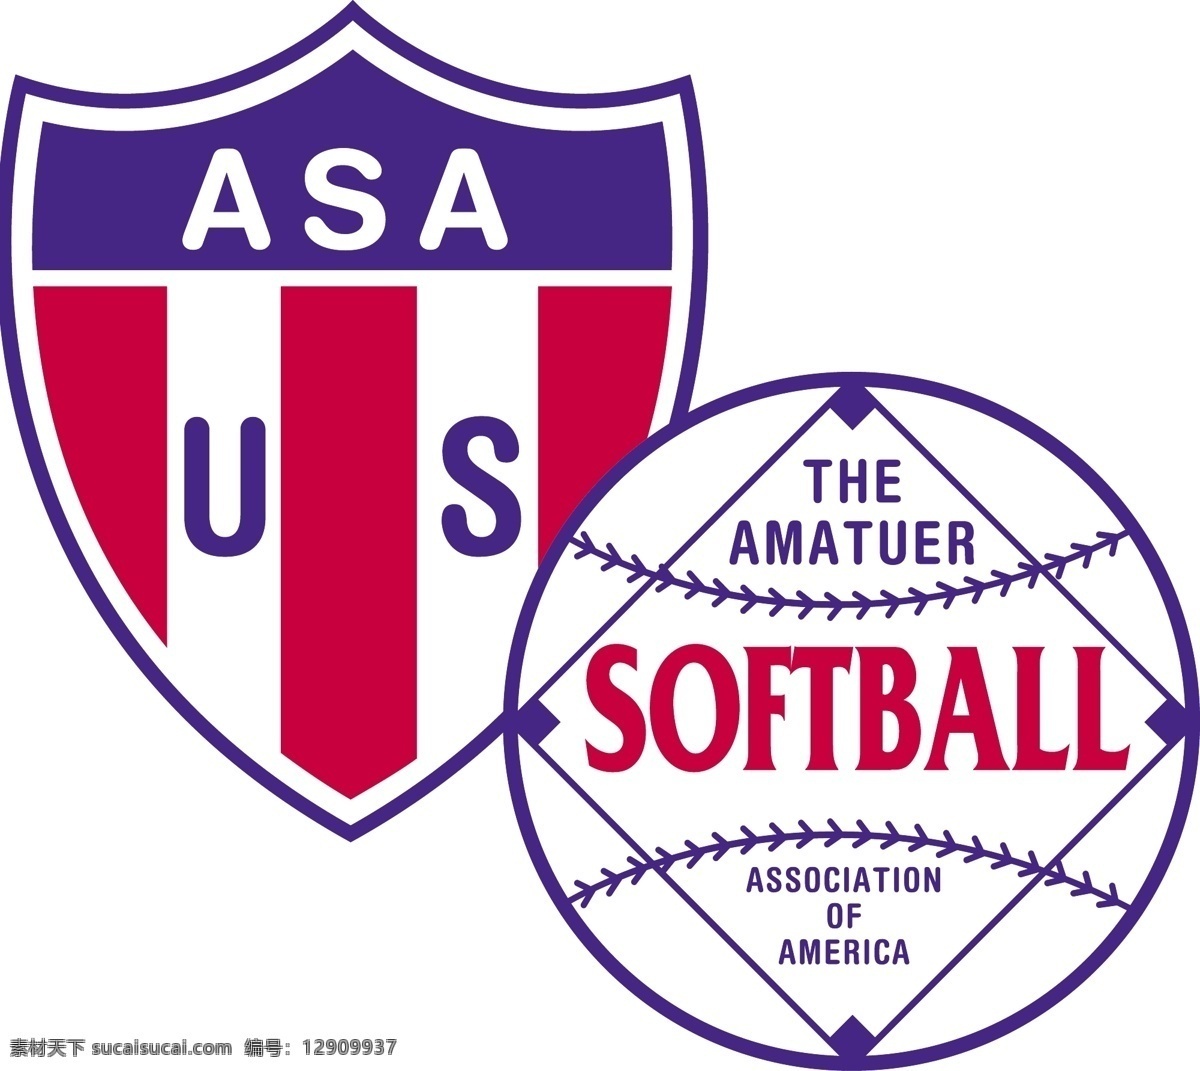 美国 垒球 协会 标识 公司 免费 品牌 品牌标识 商标 矢量标志下载 免费矢量标识 矢量 psd源文件 logo设计